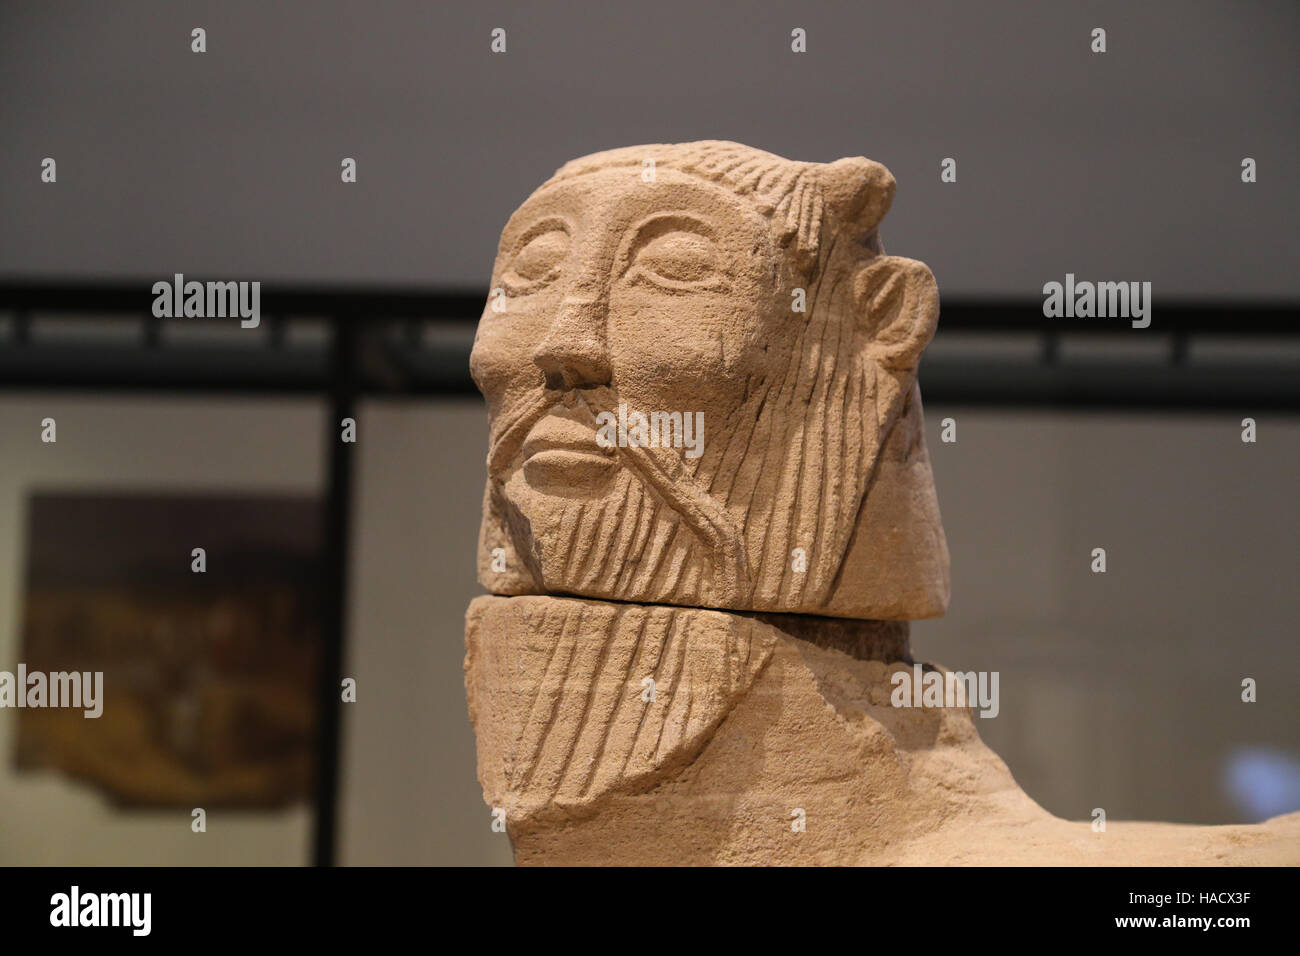 Biche Balazote. Hybride Mensch/Tier. Kalkstein. Iberischen Kultur. 6.-5. Jahrhundert BC. Balazote, Albacete. Spanien. Stockfoto